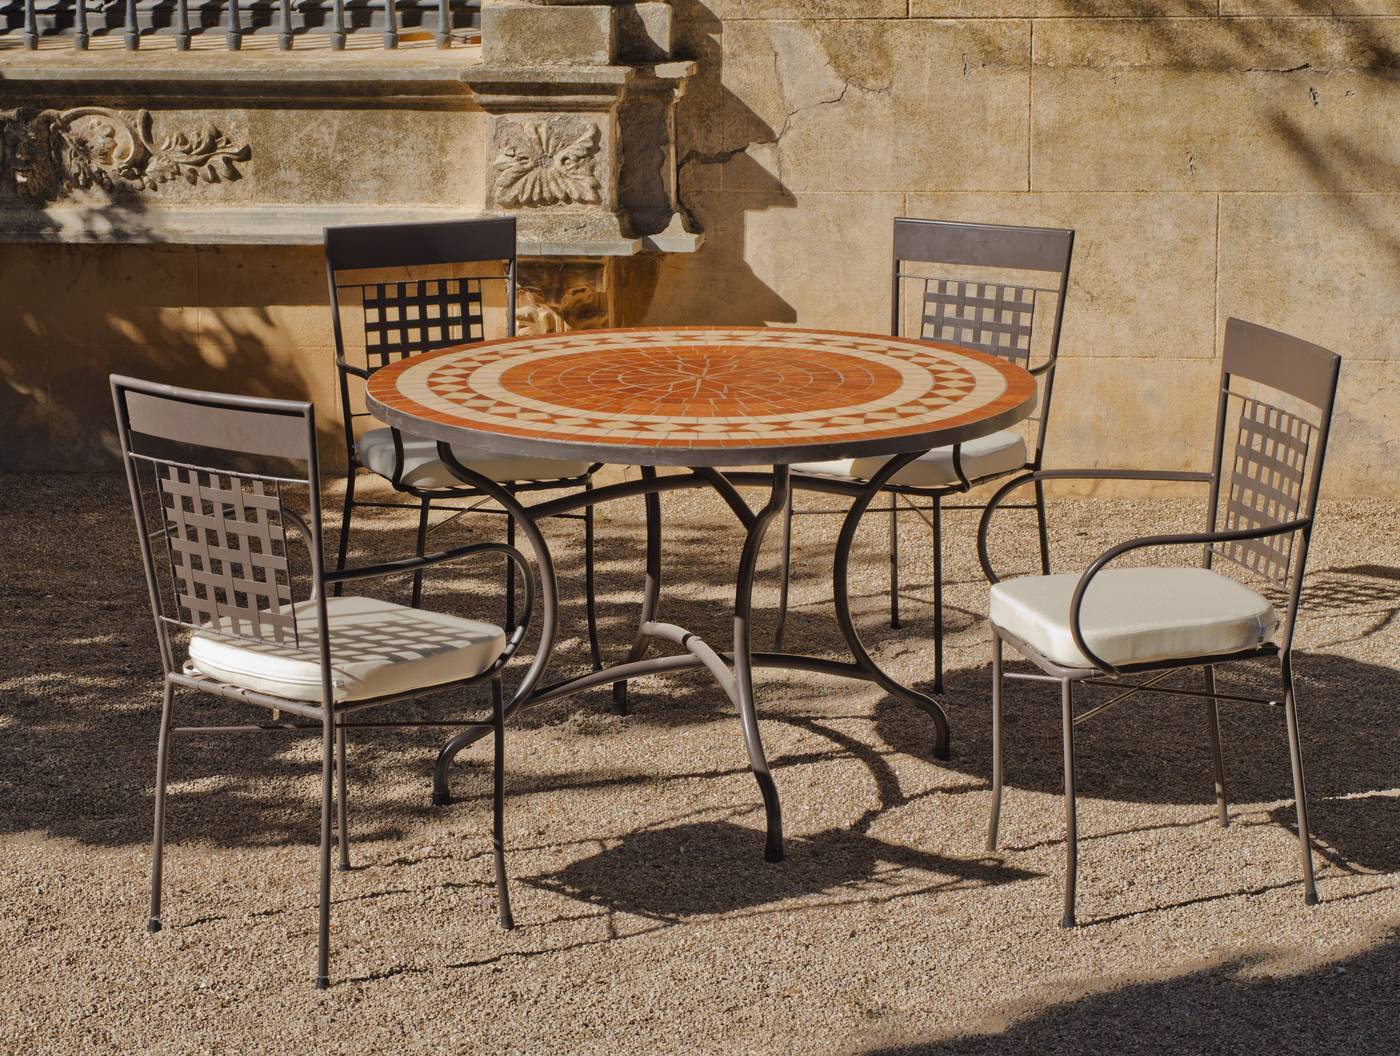 Conjunto de forja para jardín: 1 mesa con panel mosaico + 4 sillones de forja + 4 cojines